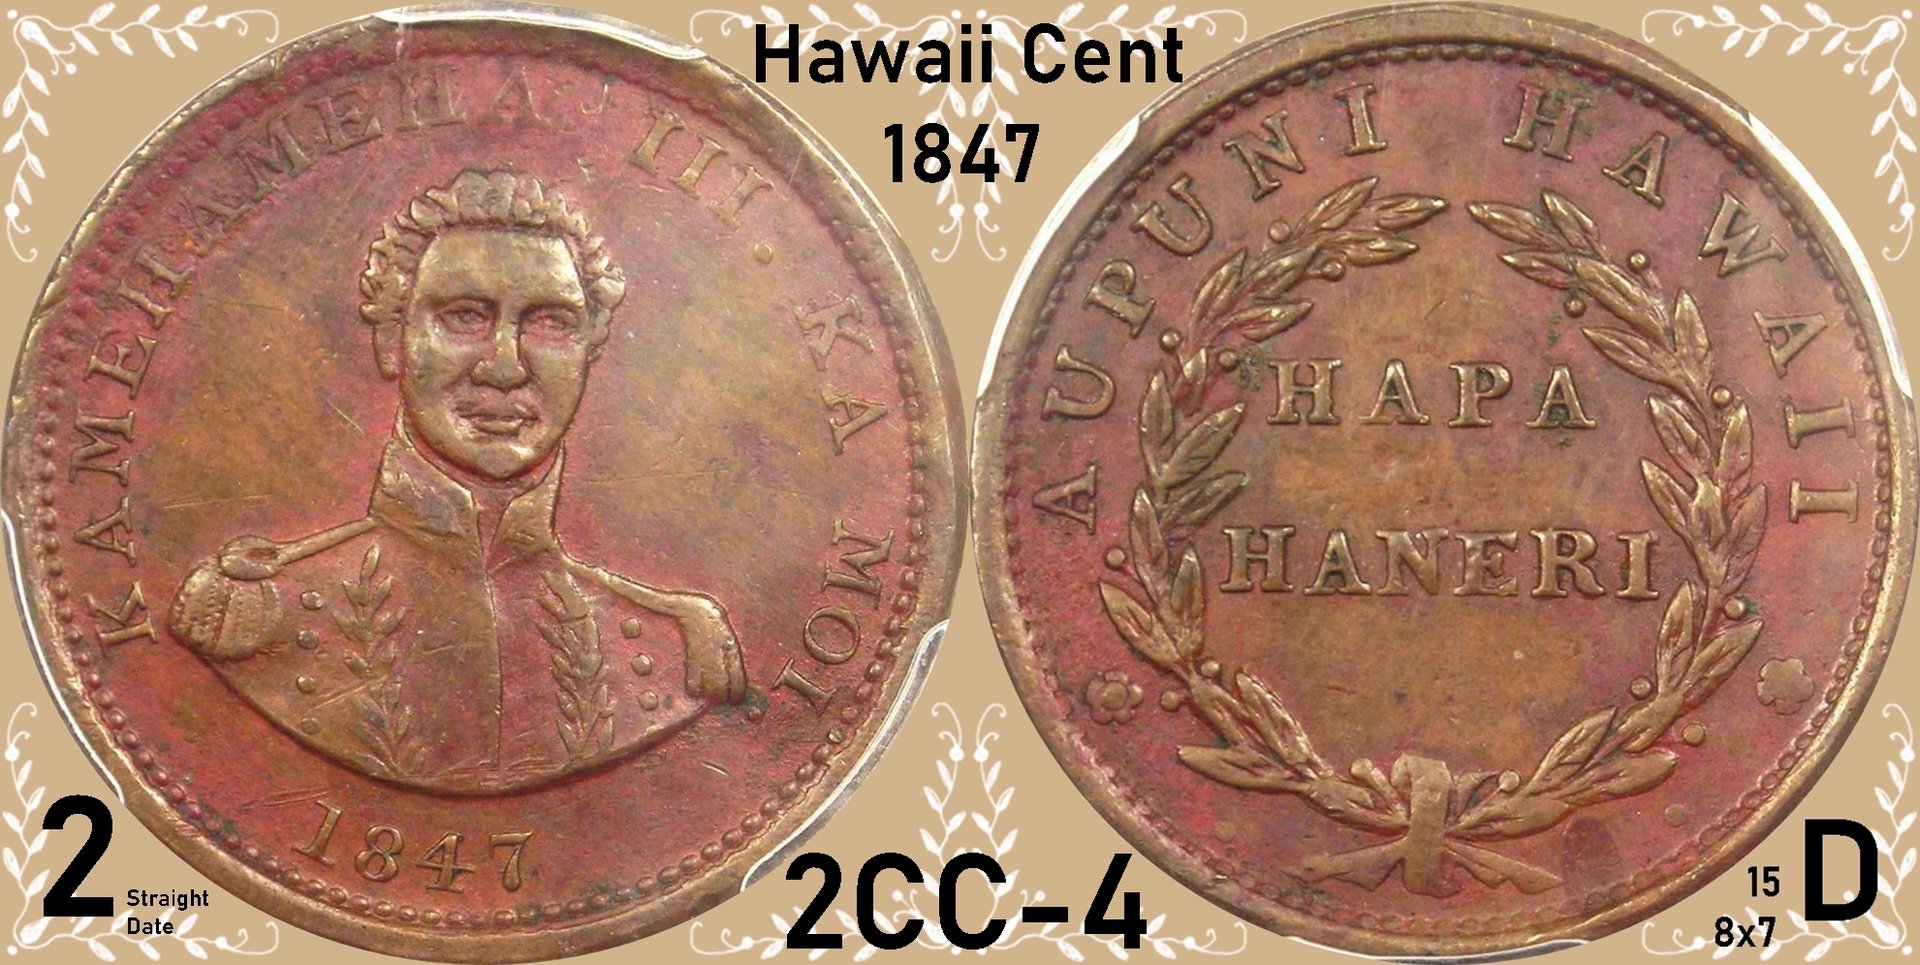 1847 Hawaii Cent 2CC-4.jpg